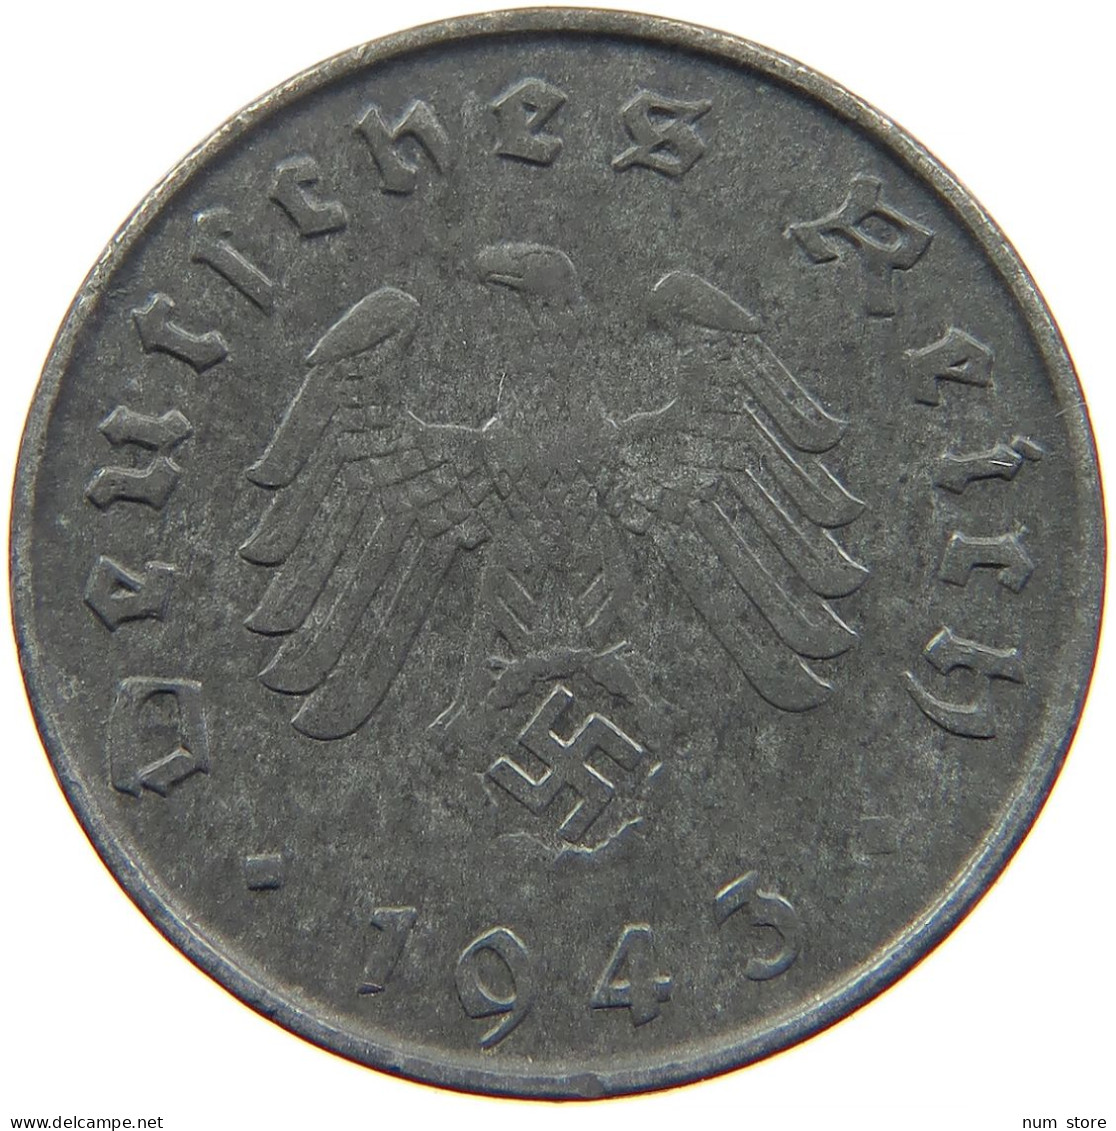 GERMANY 10 REICHSPFENNIG 1943 D #s095 0059 - 10 Reichspfennig